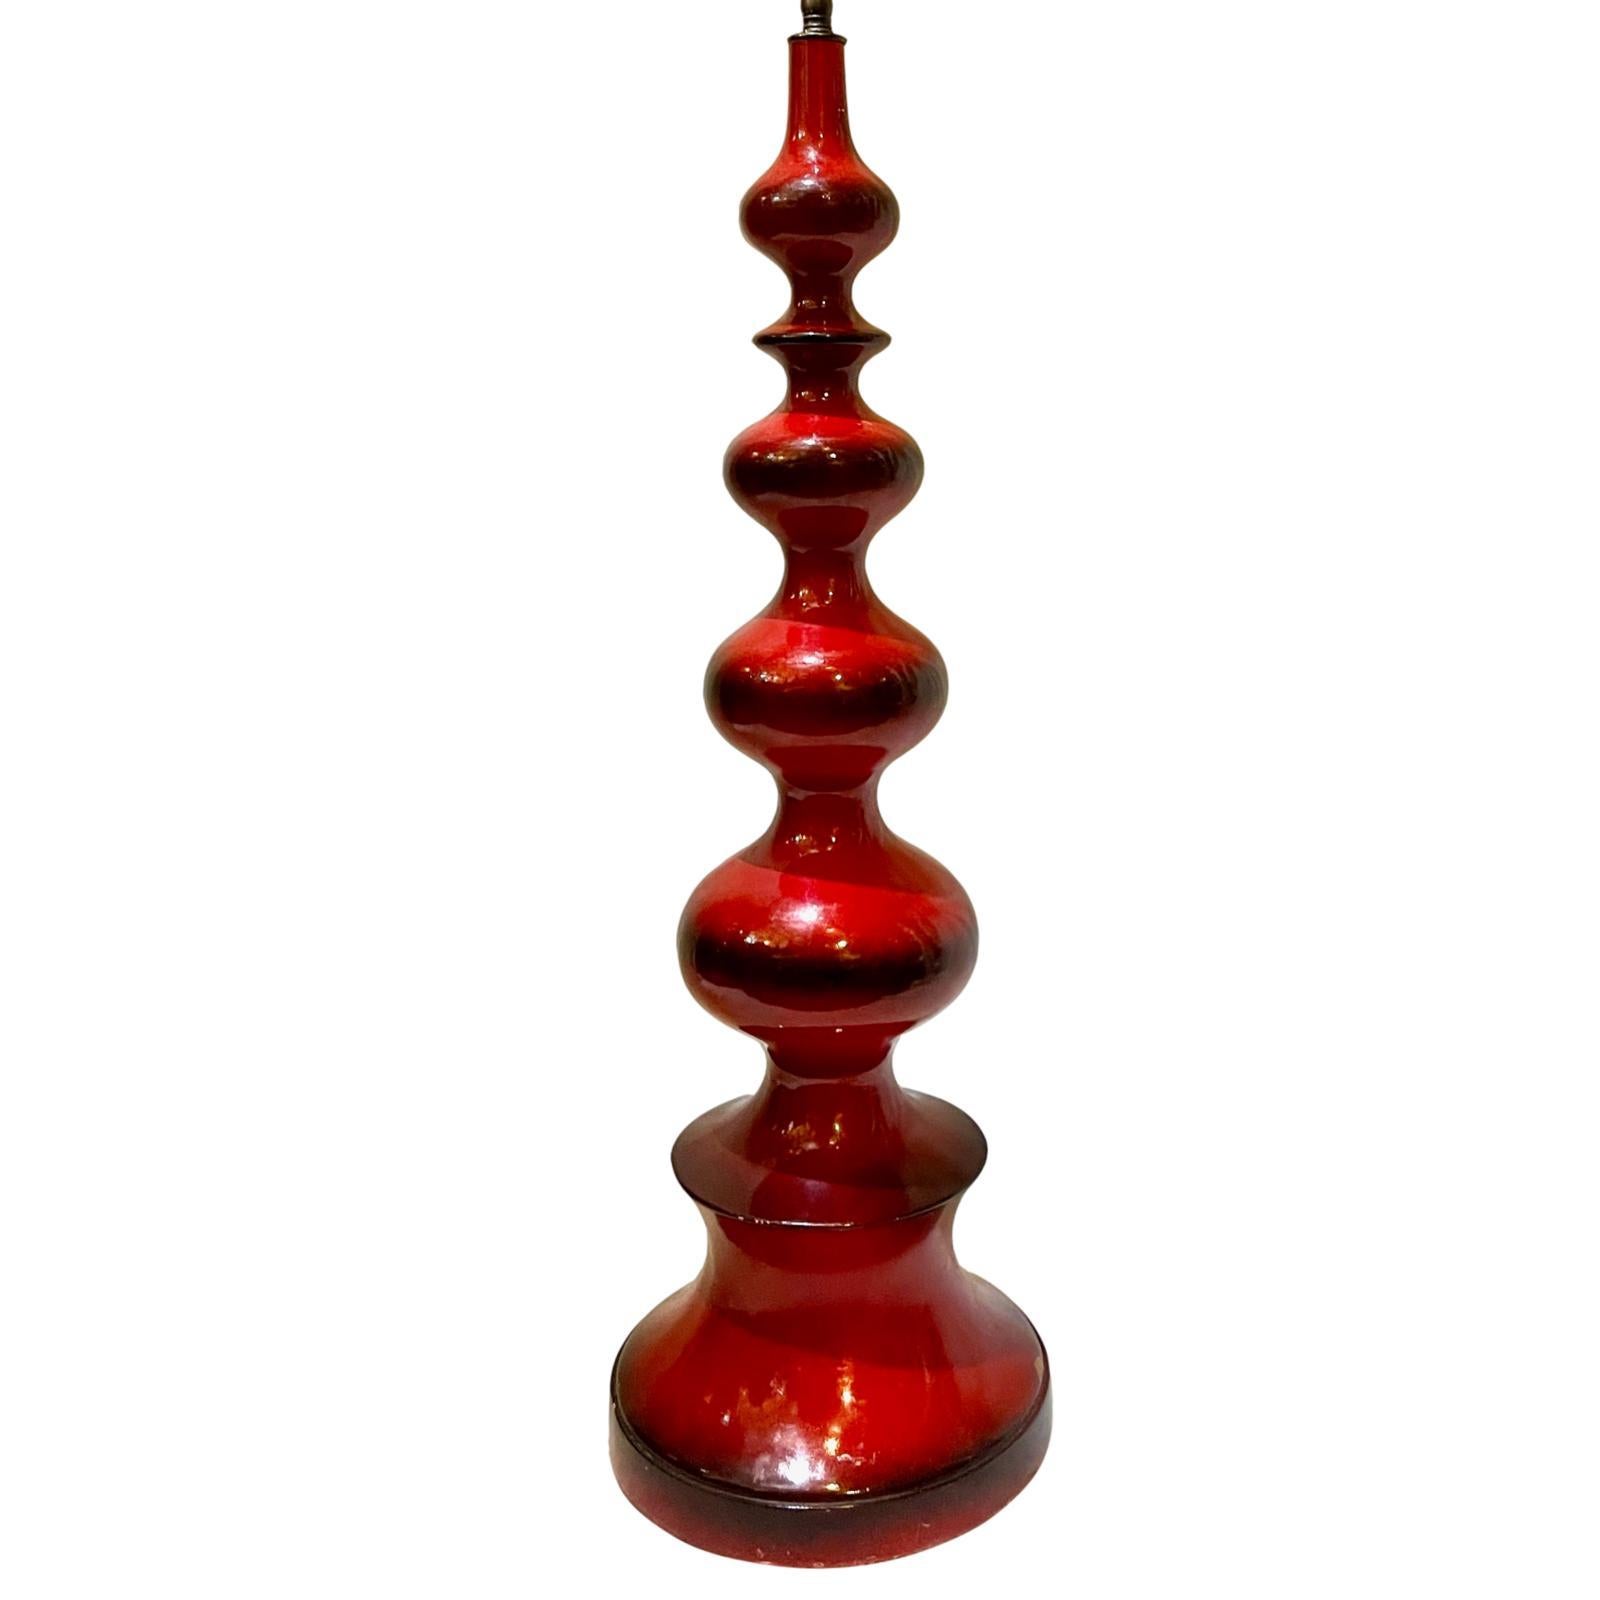 Une seule lampe de table italienne en bois laqué rouge datant des années 1950.

Mesures :
Hauteur : 27